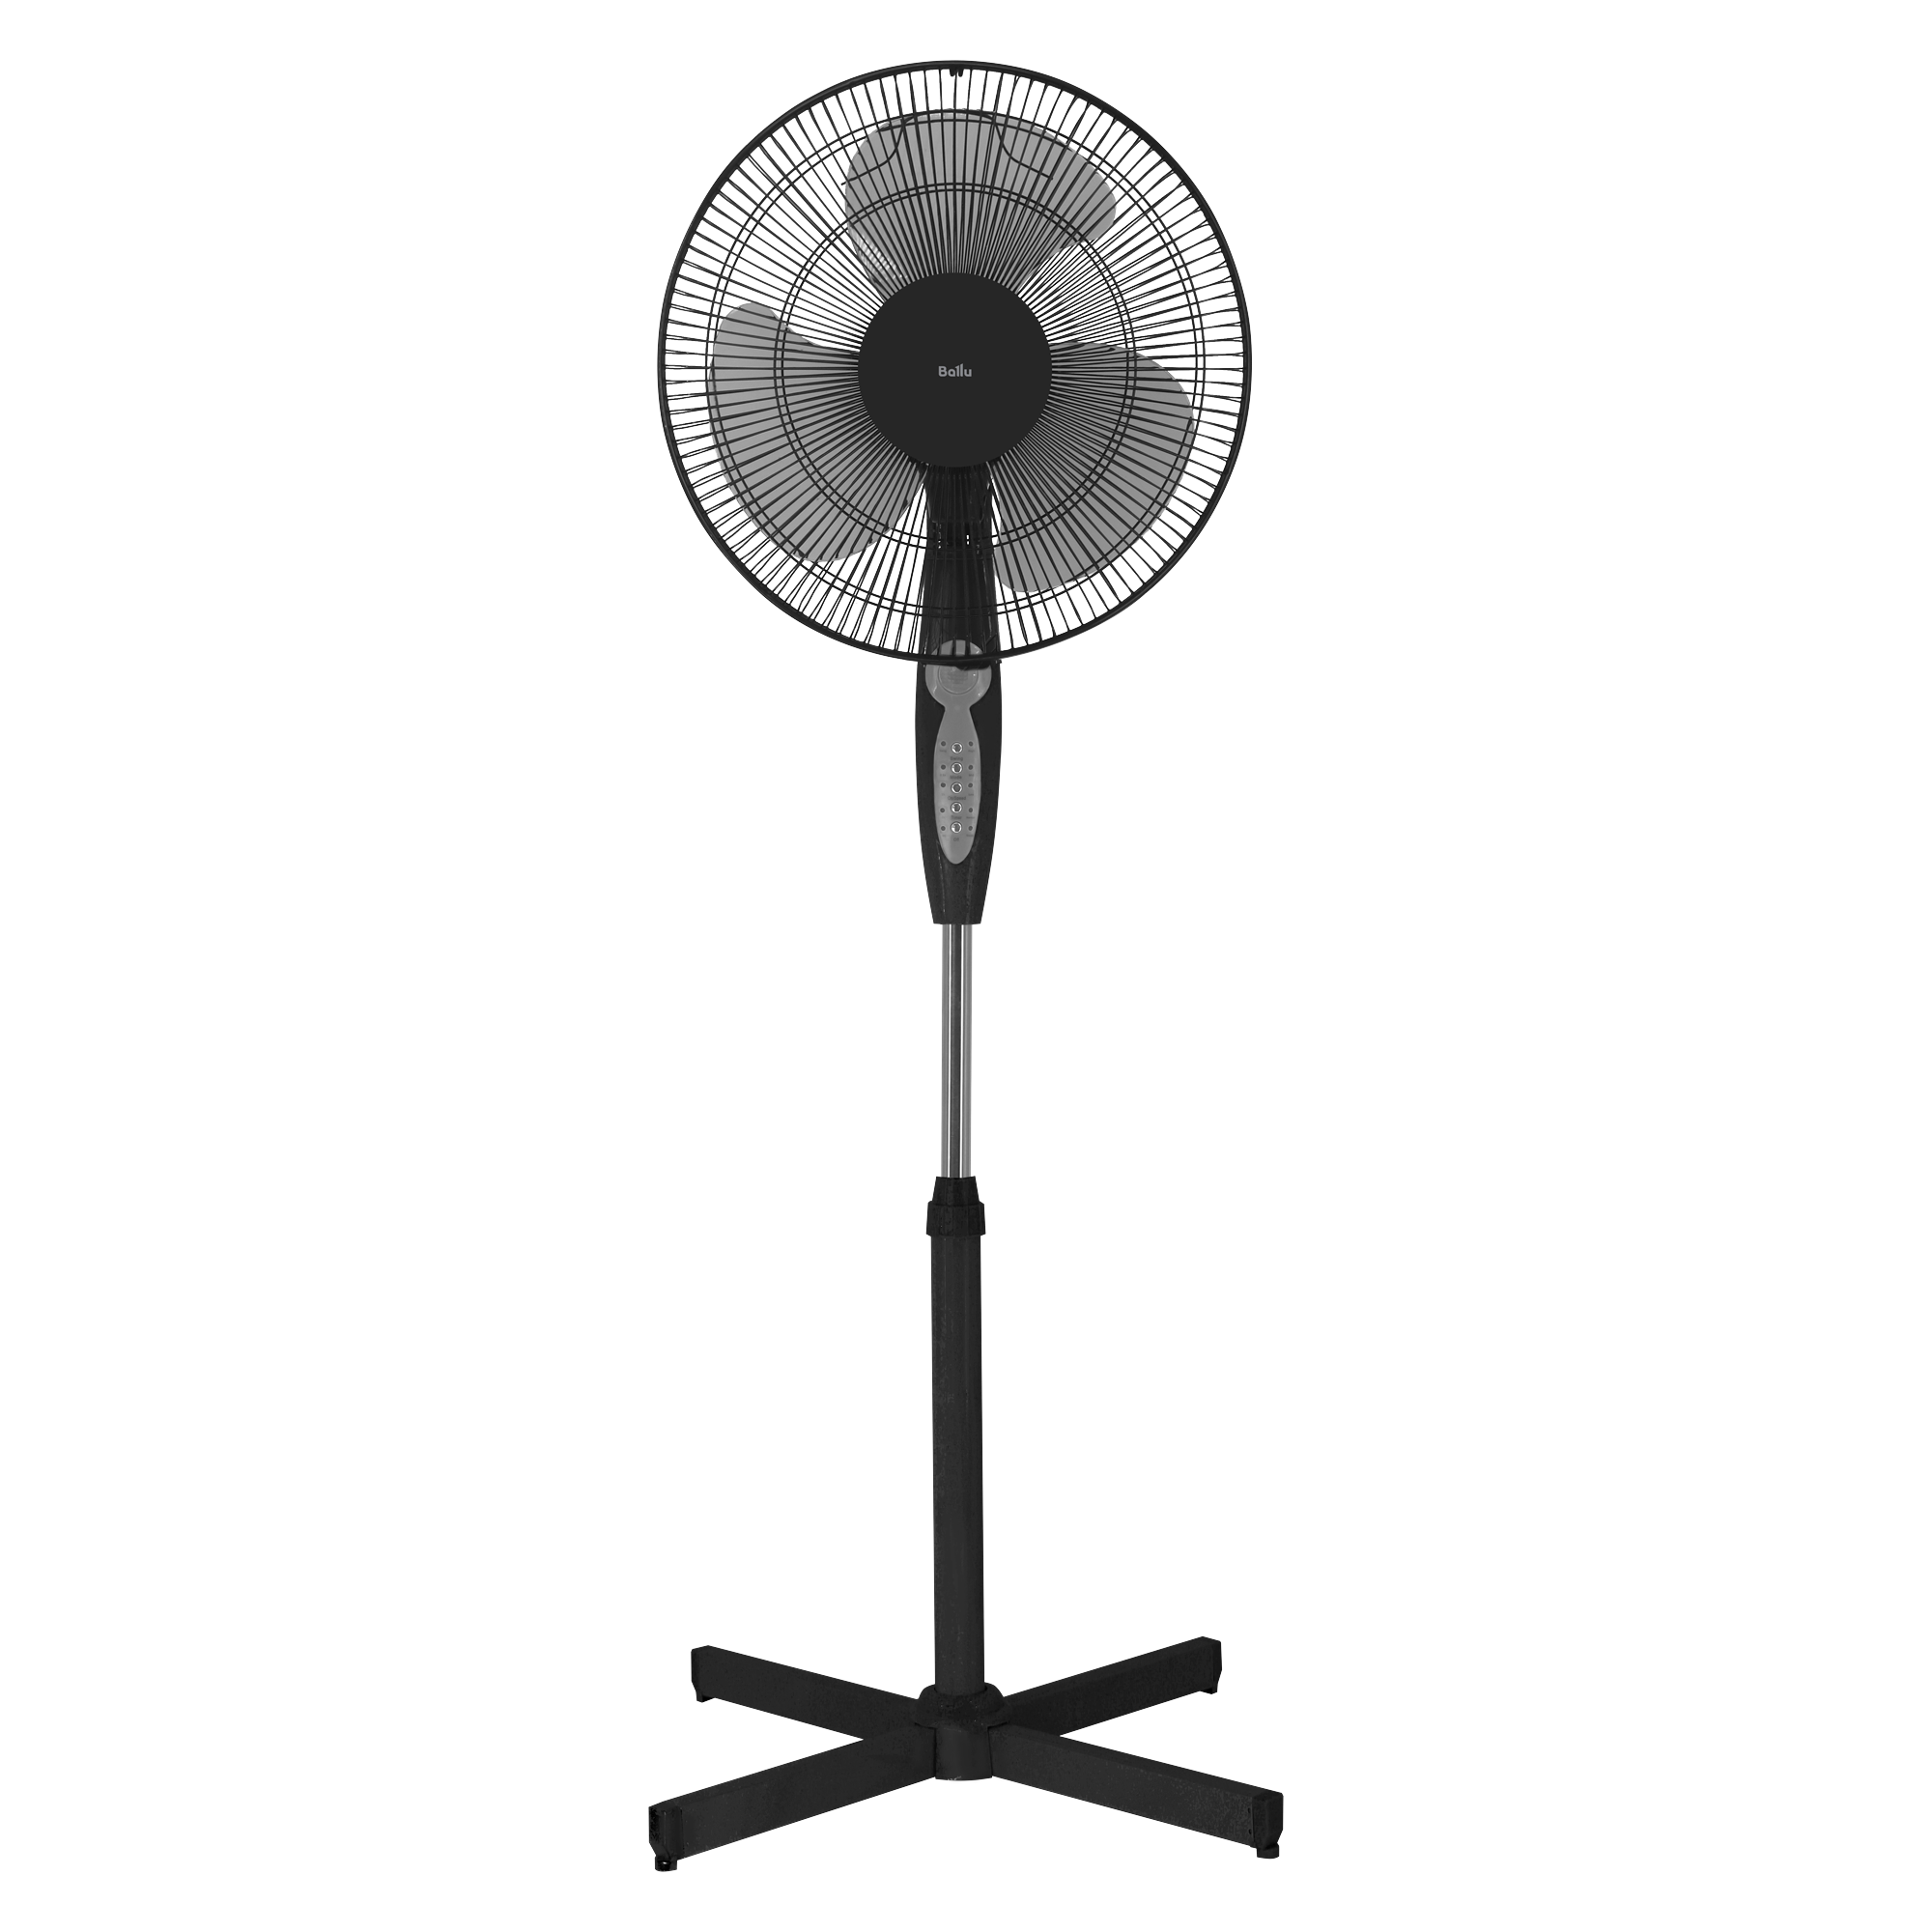 Вентилятор напольный Ballu BFF-807 черный вентилятор напольный galaxy line gl 8110 60 вт диаметр 40см высота 120см 3 скорости потока воздуха